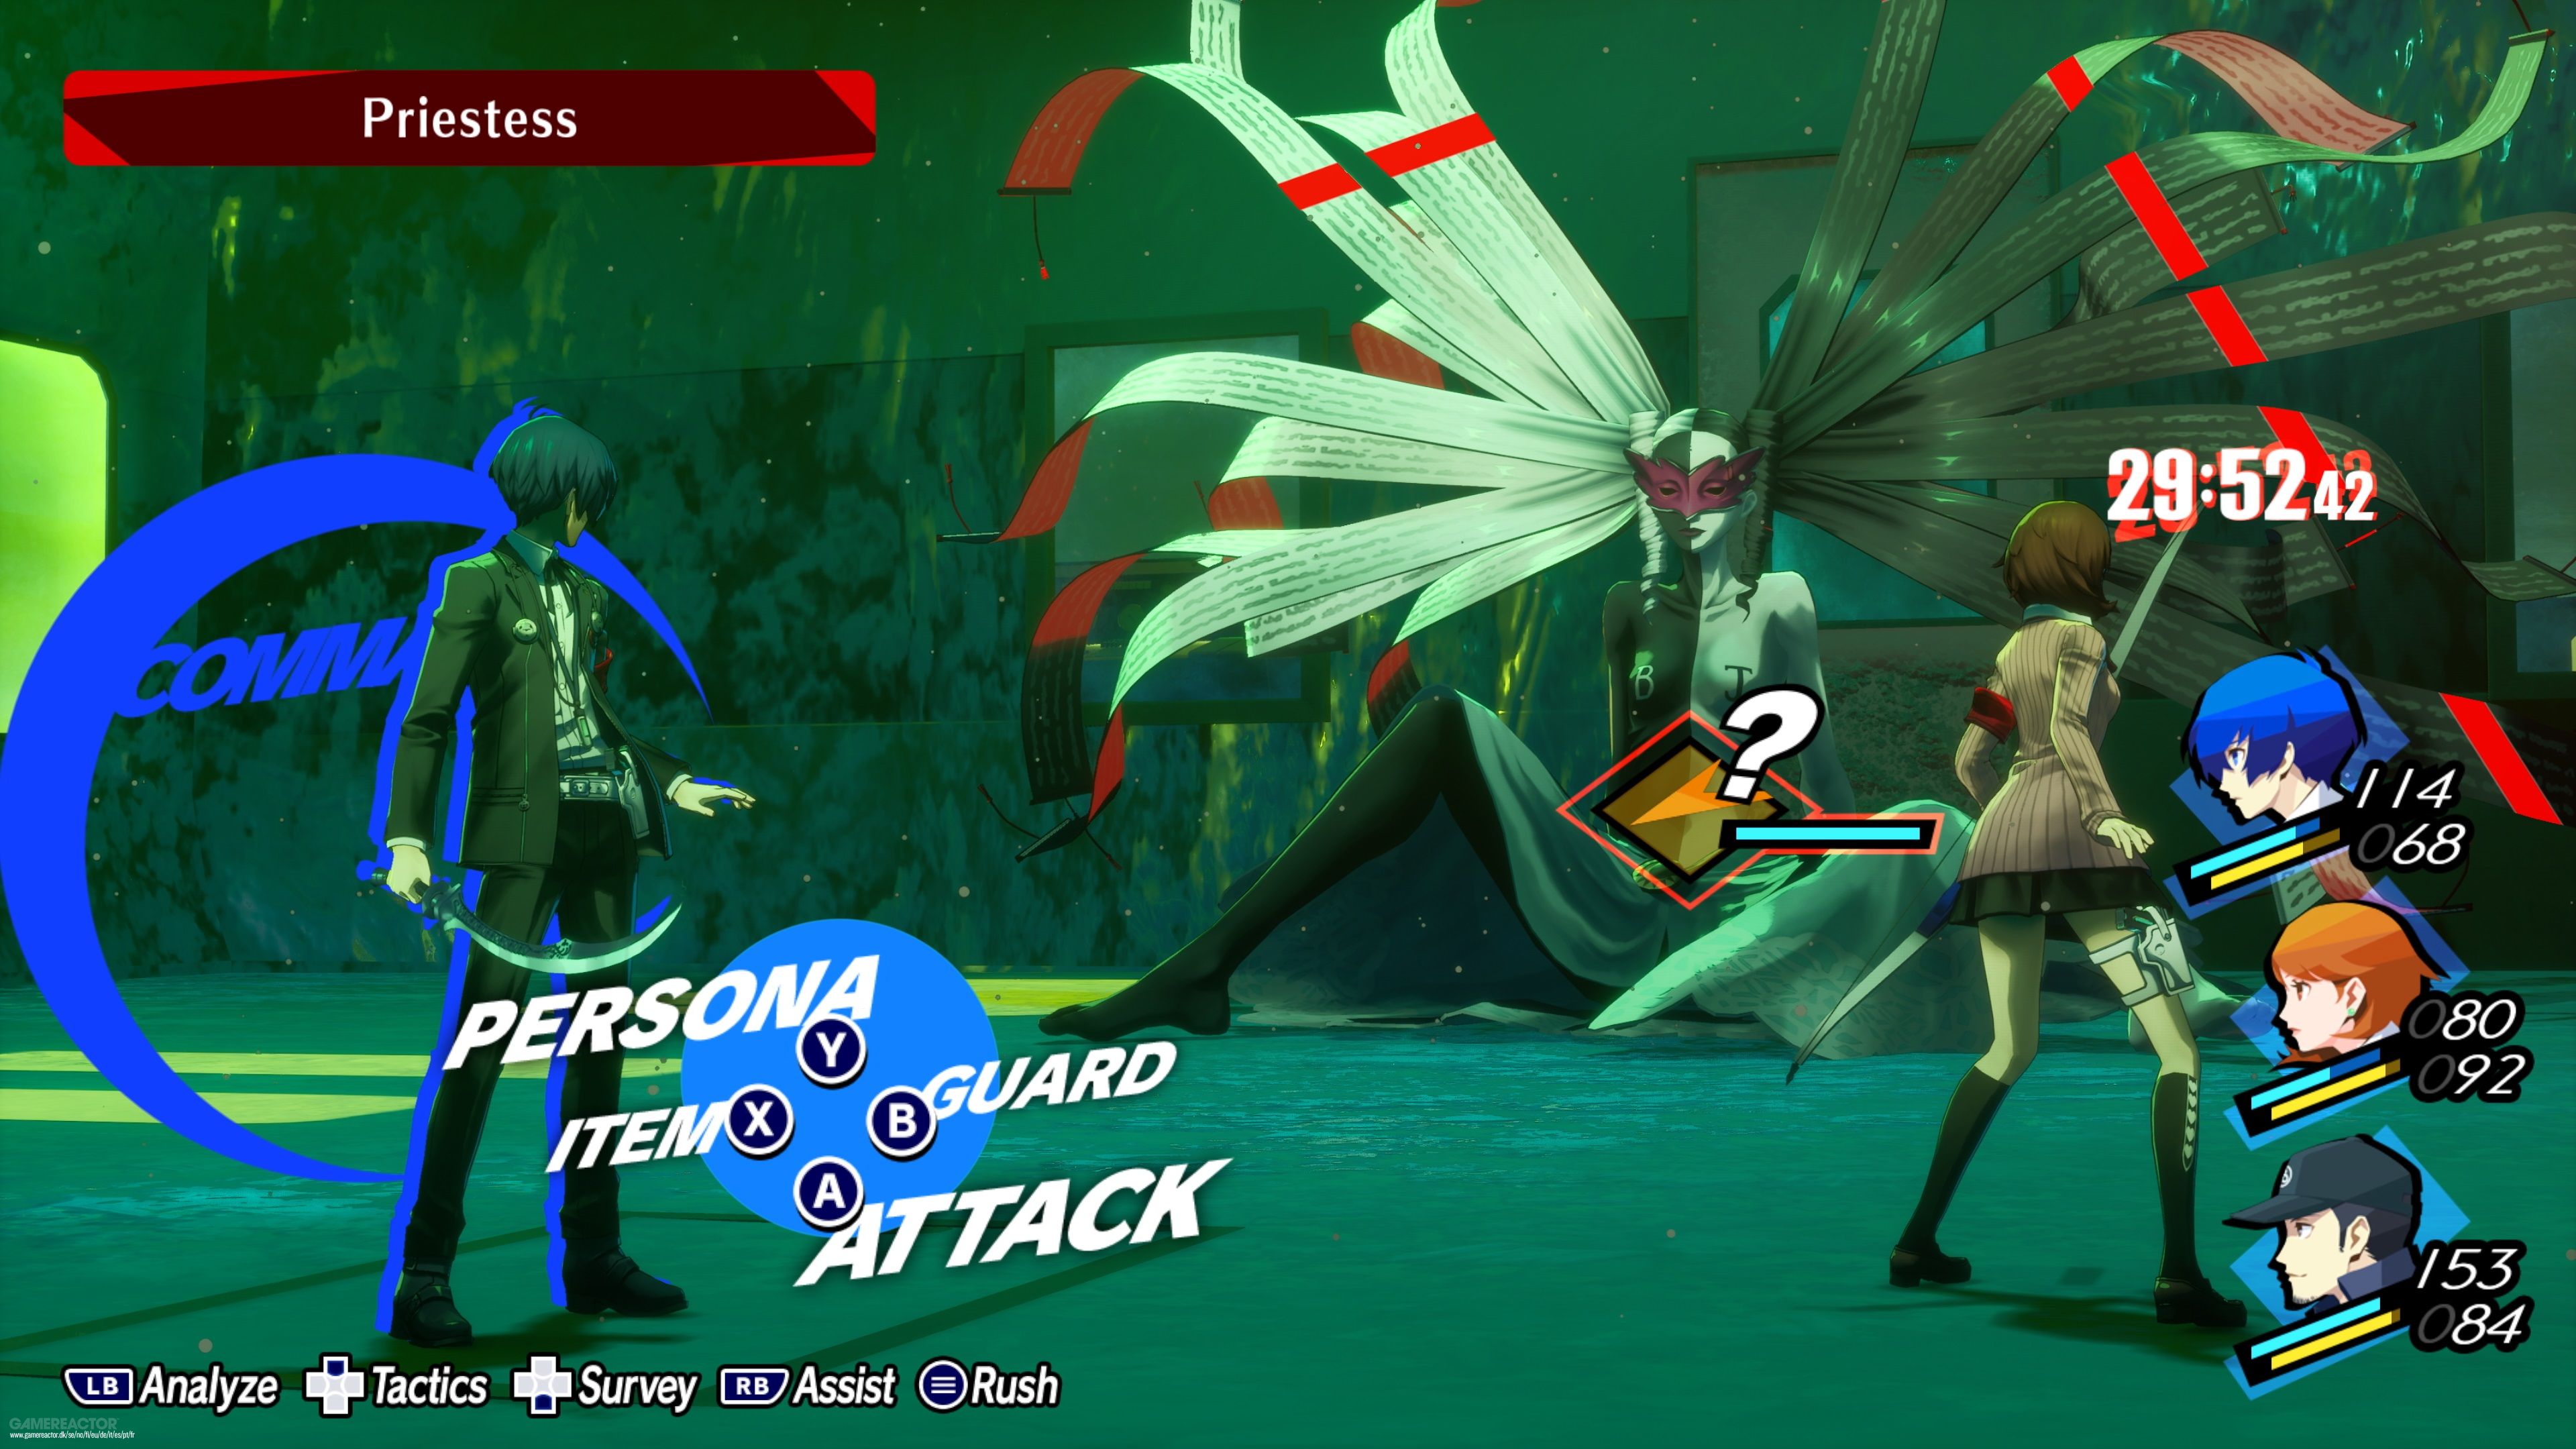 Скриншот-1 из игры Persona 3 Reload Digital Premium Edition для PS